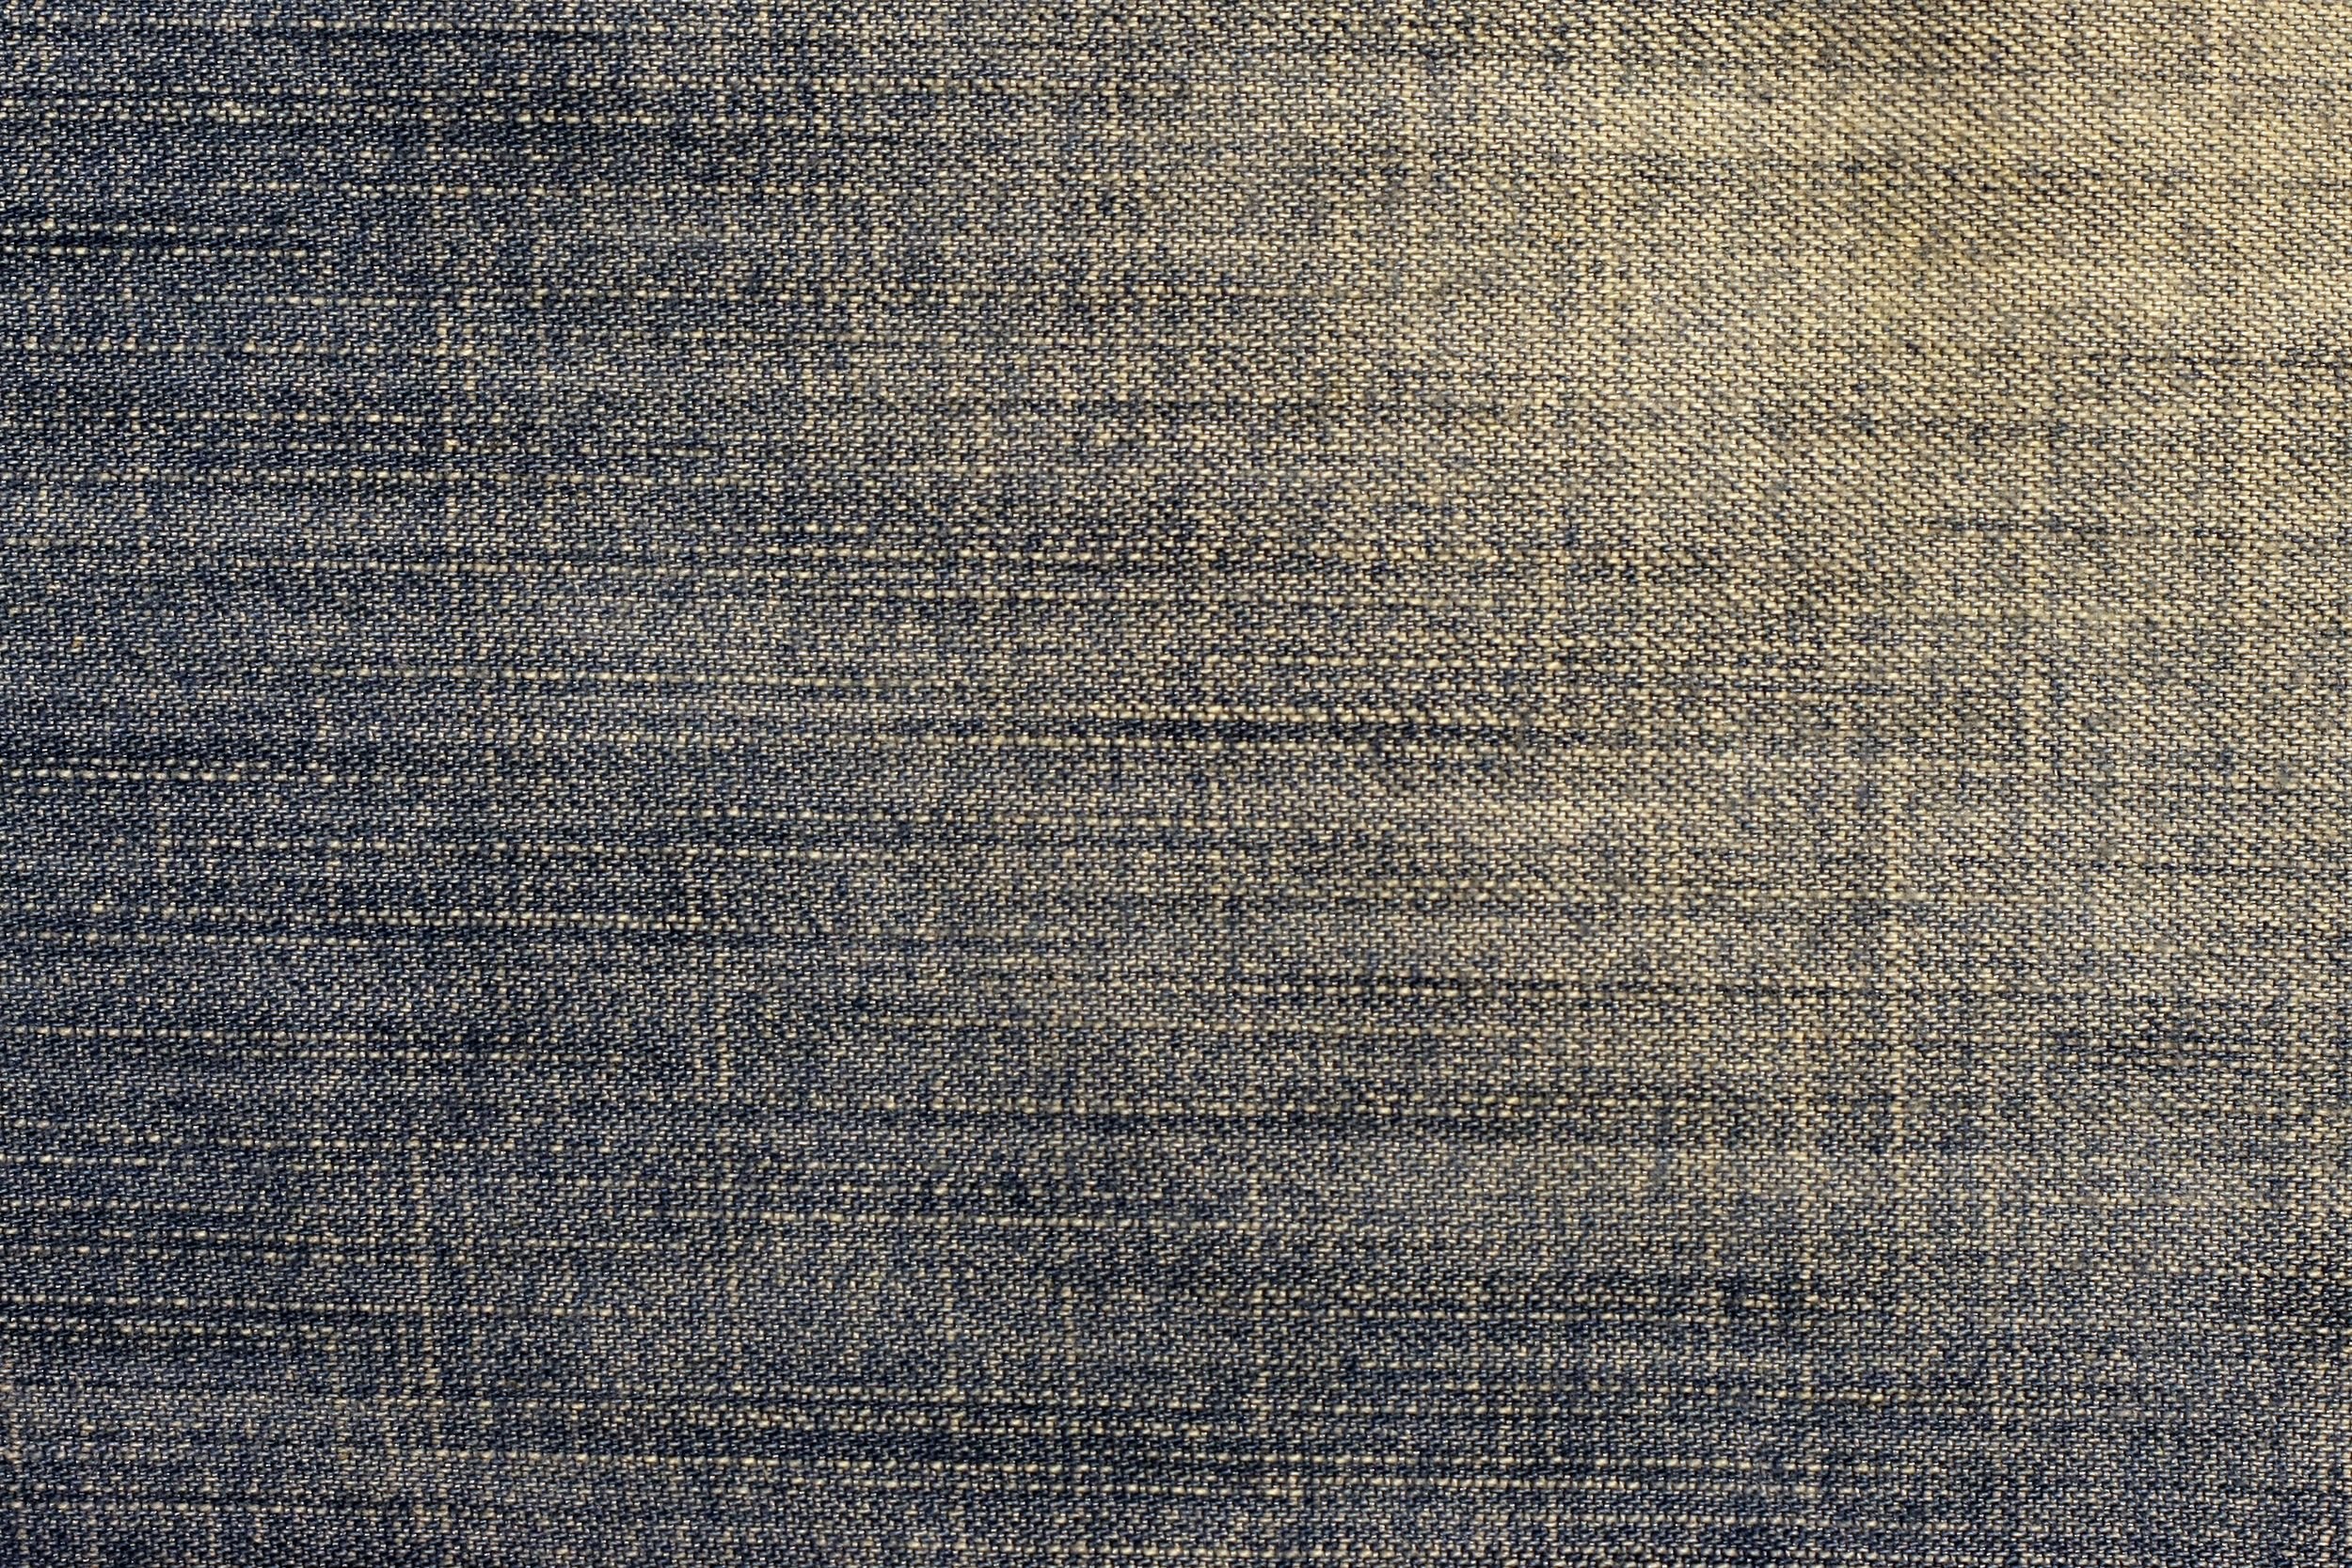 Текстура джинсов. Текстура ткани. Серая джинсовая ткань. Текстура джинсовой ткани. Потертая джинсовая ткань.